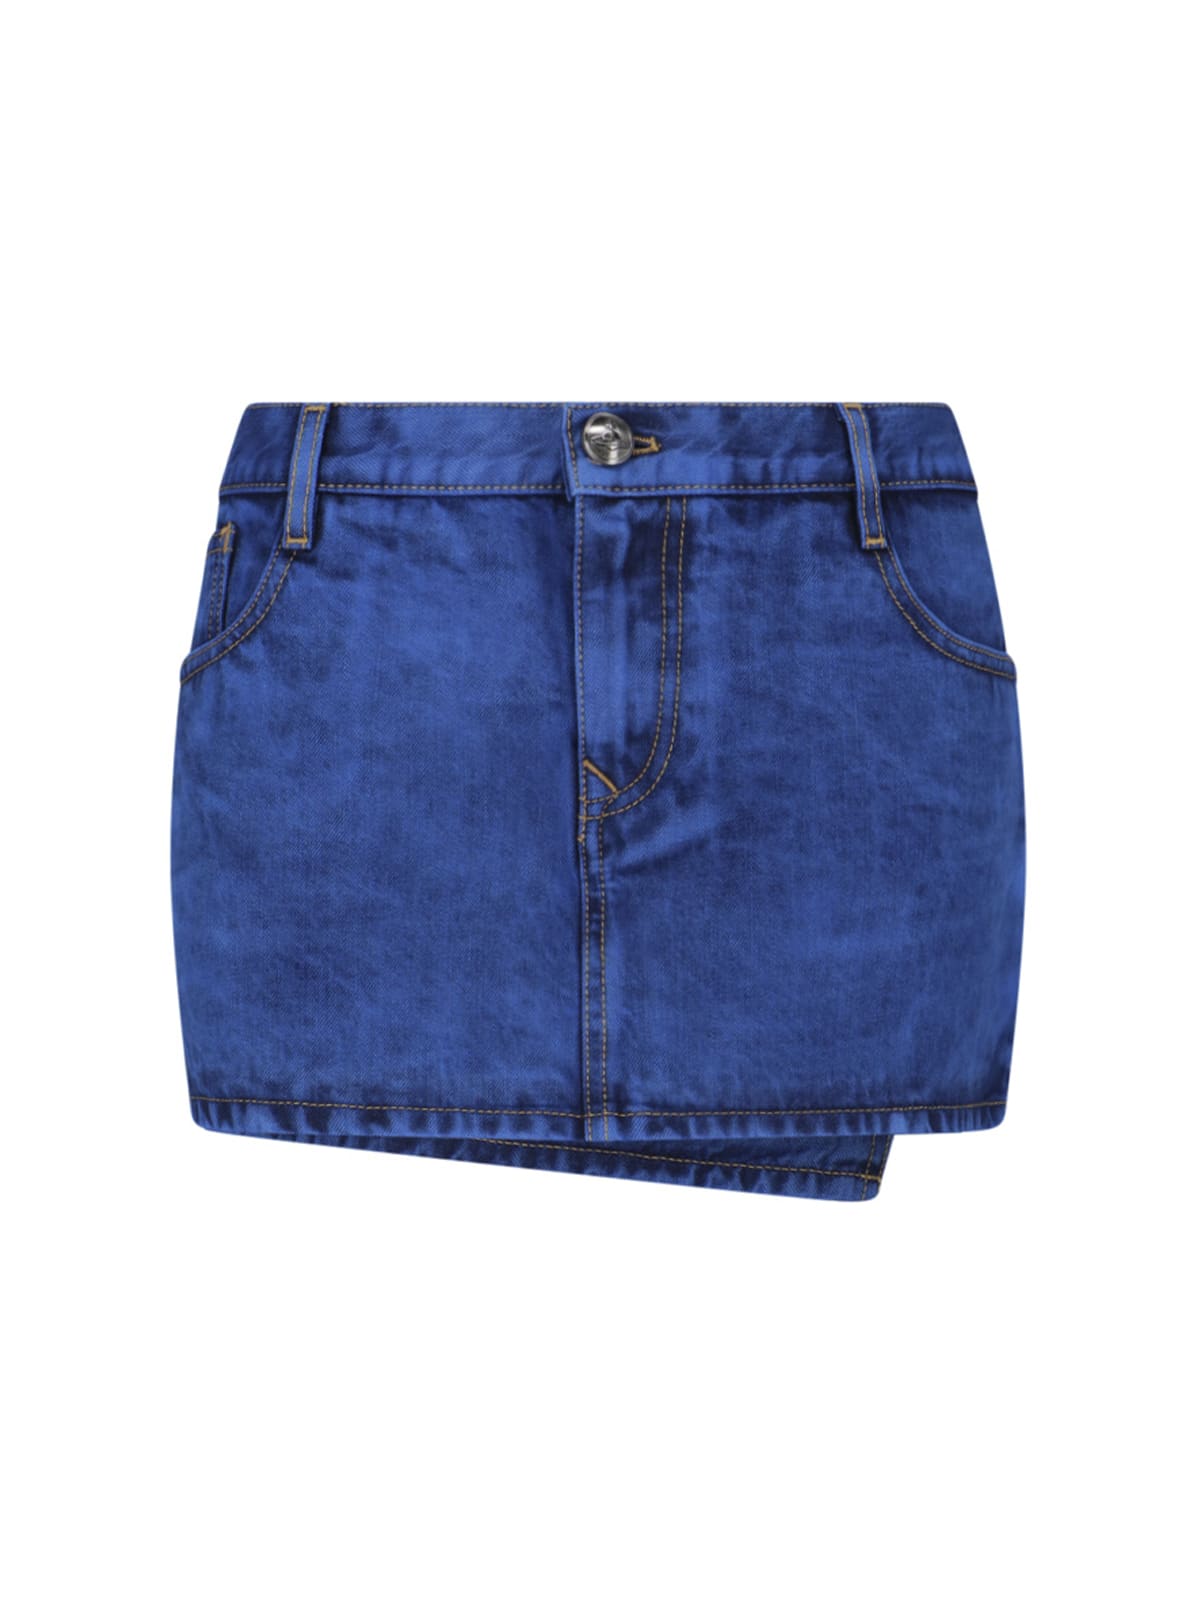 Vivienne Westwood Denim Mini Skirt In Blue